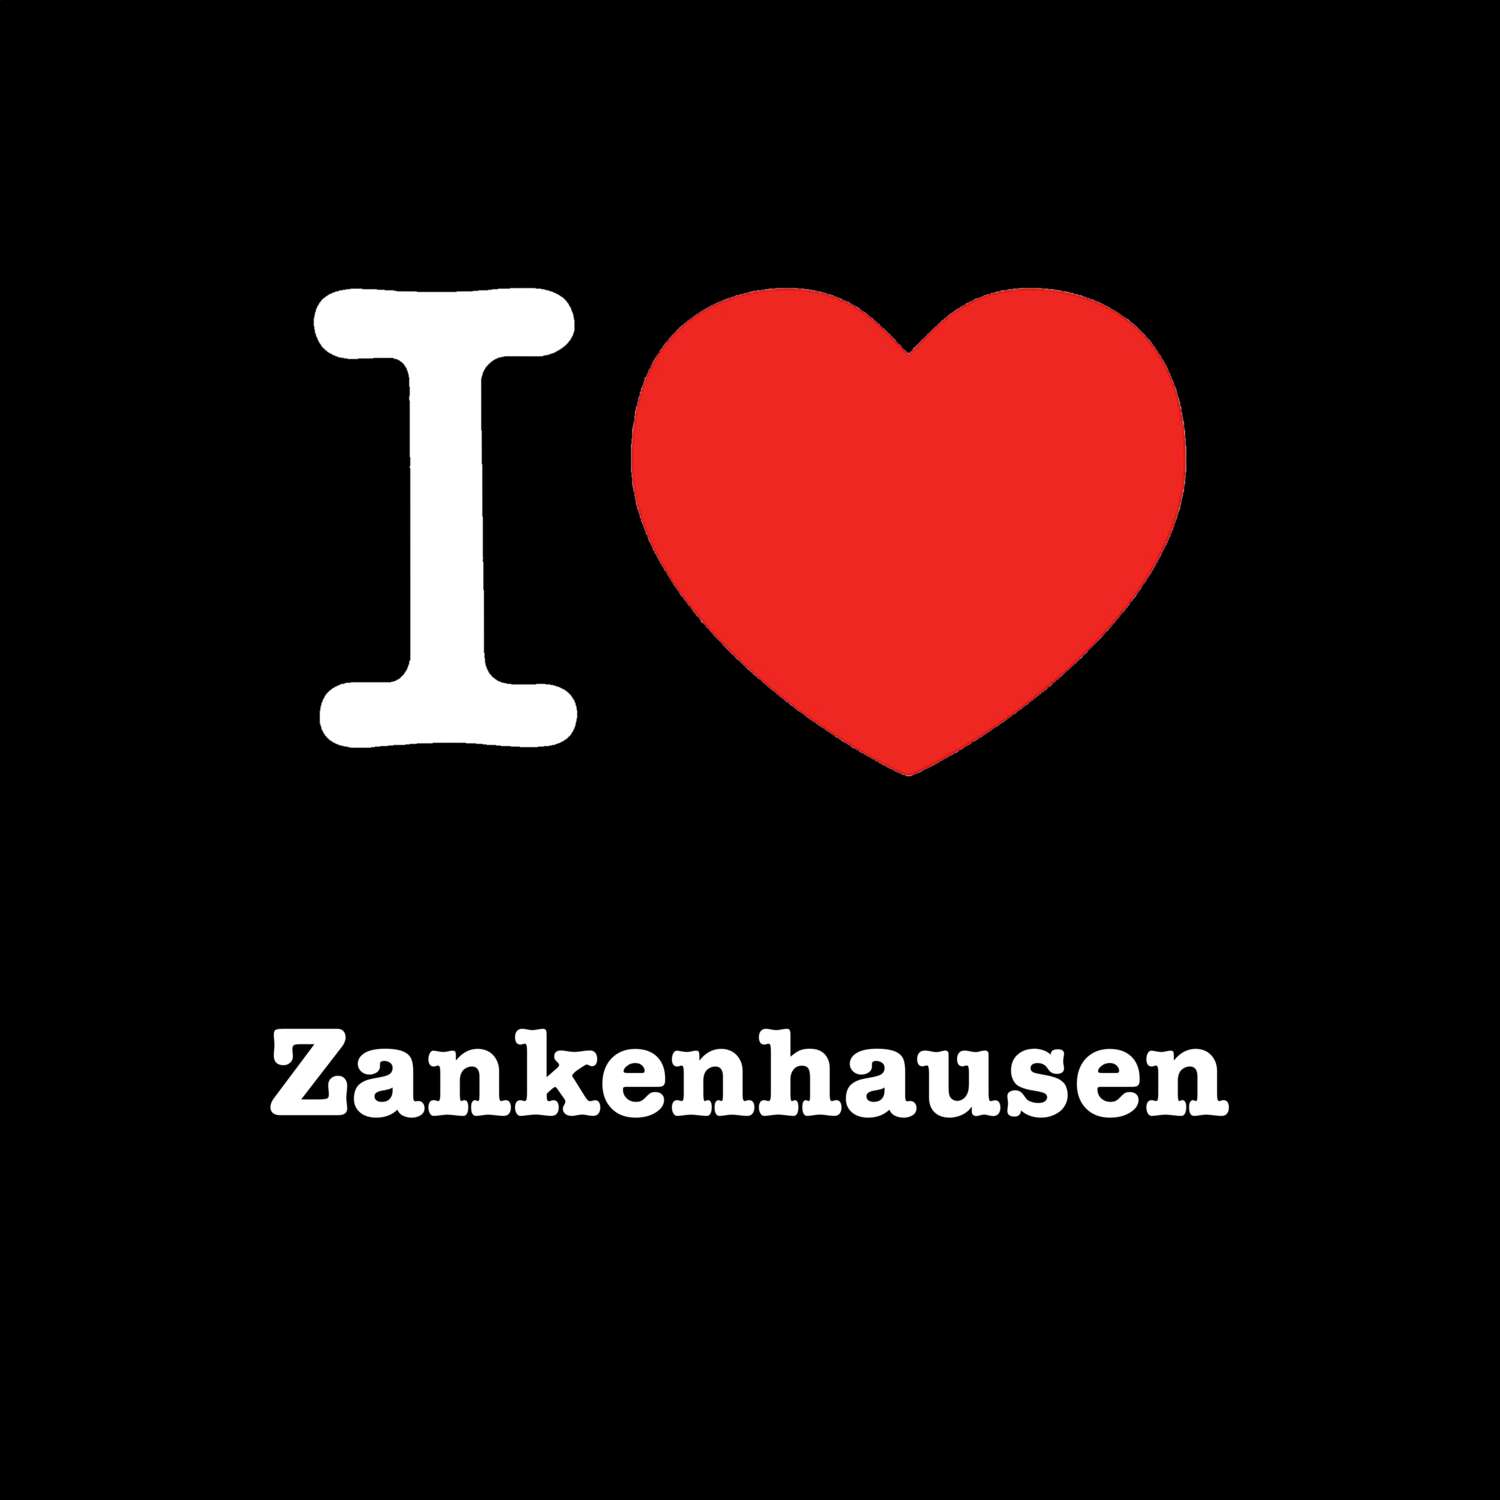 Zankenhausen T-Shirt »I love«